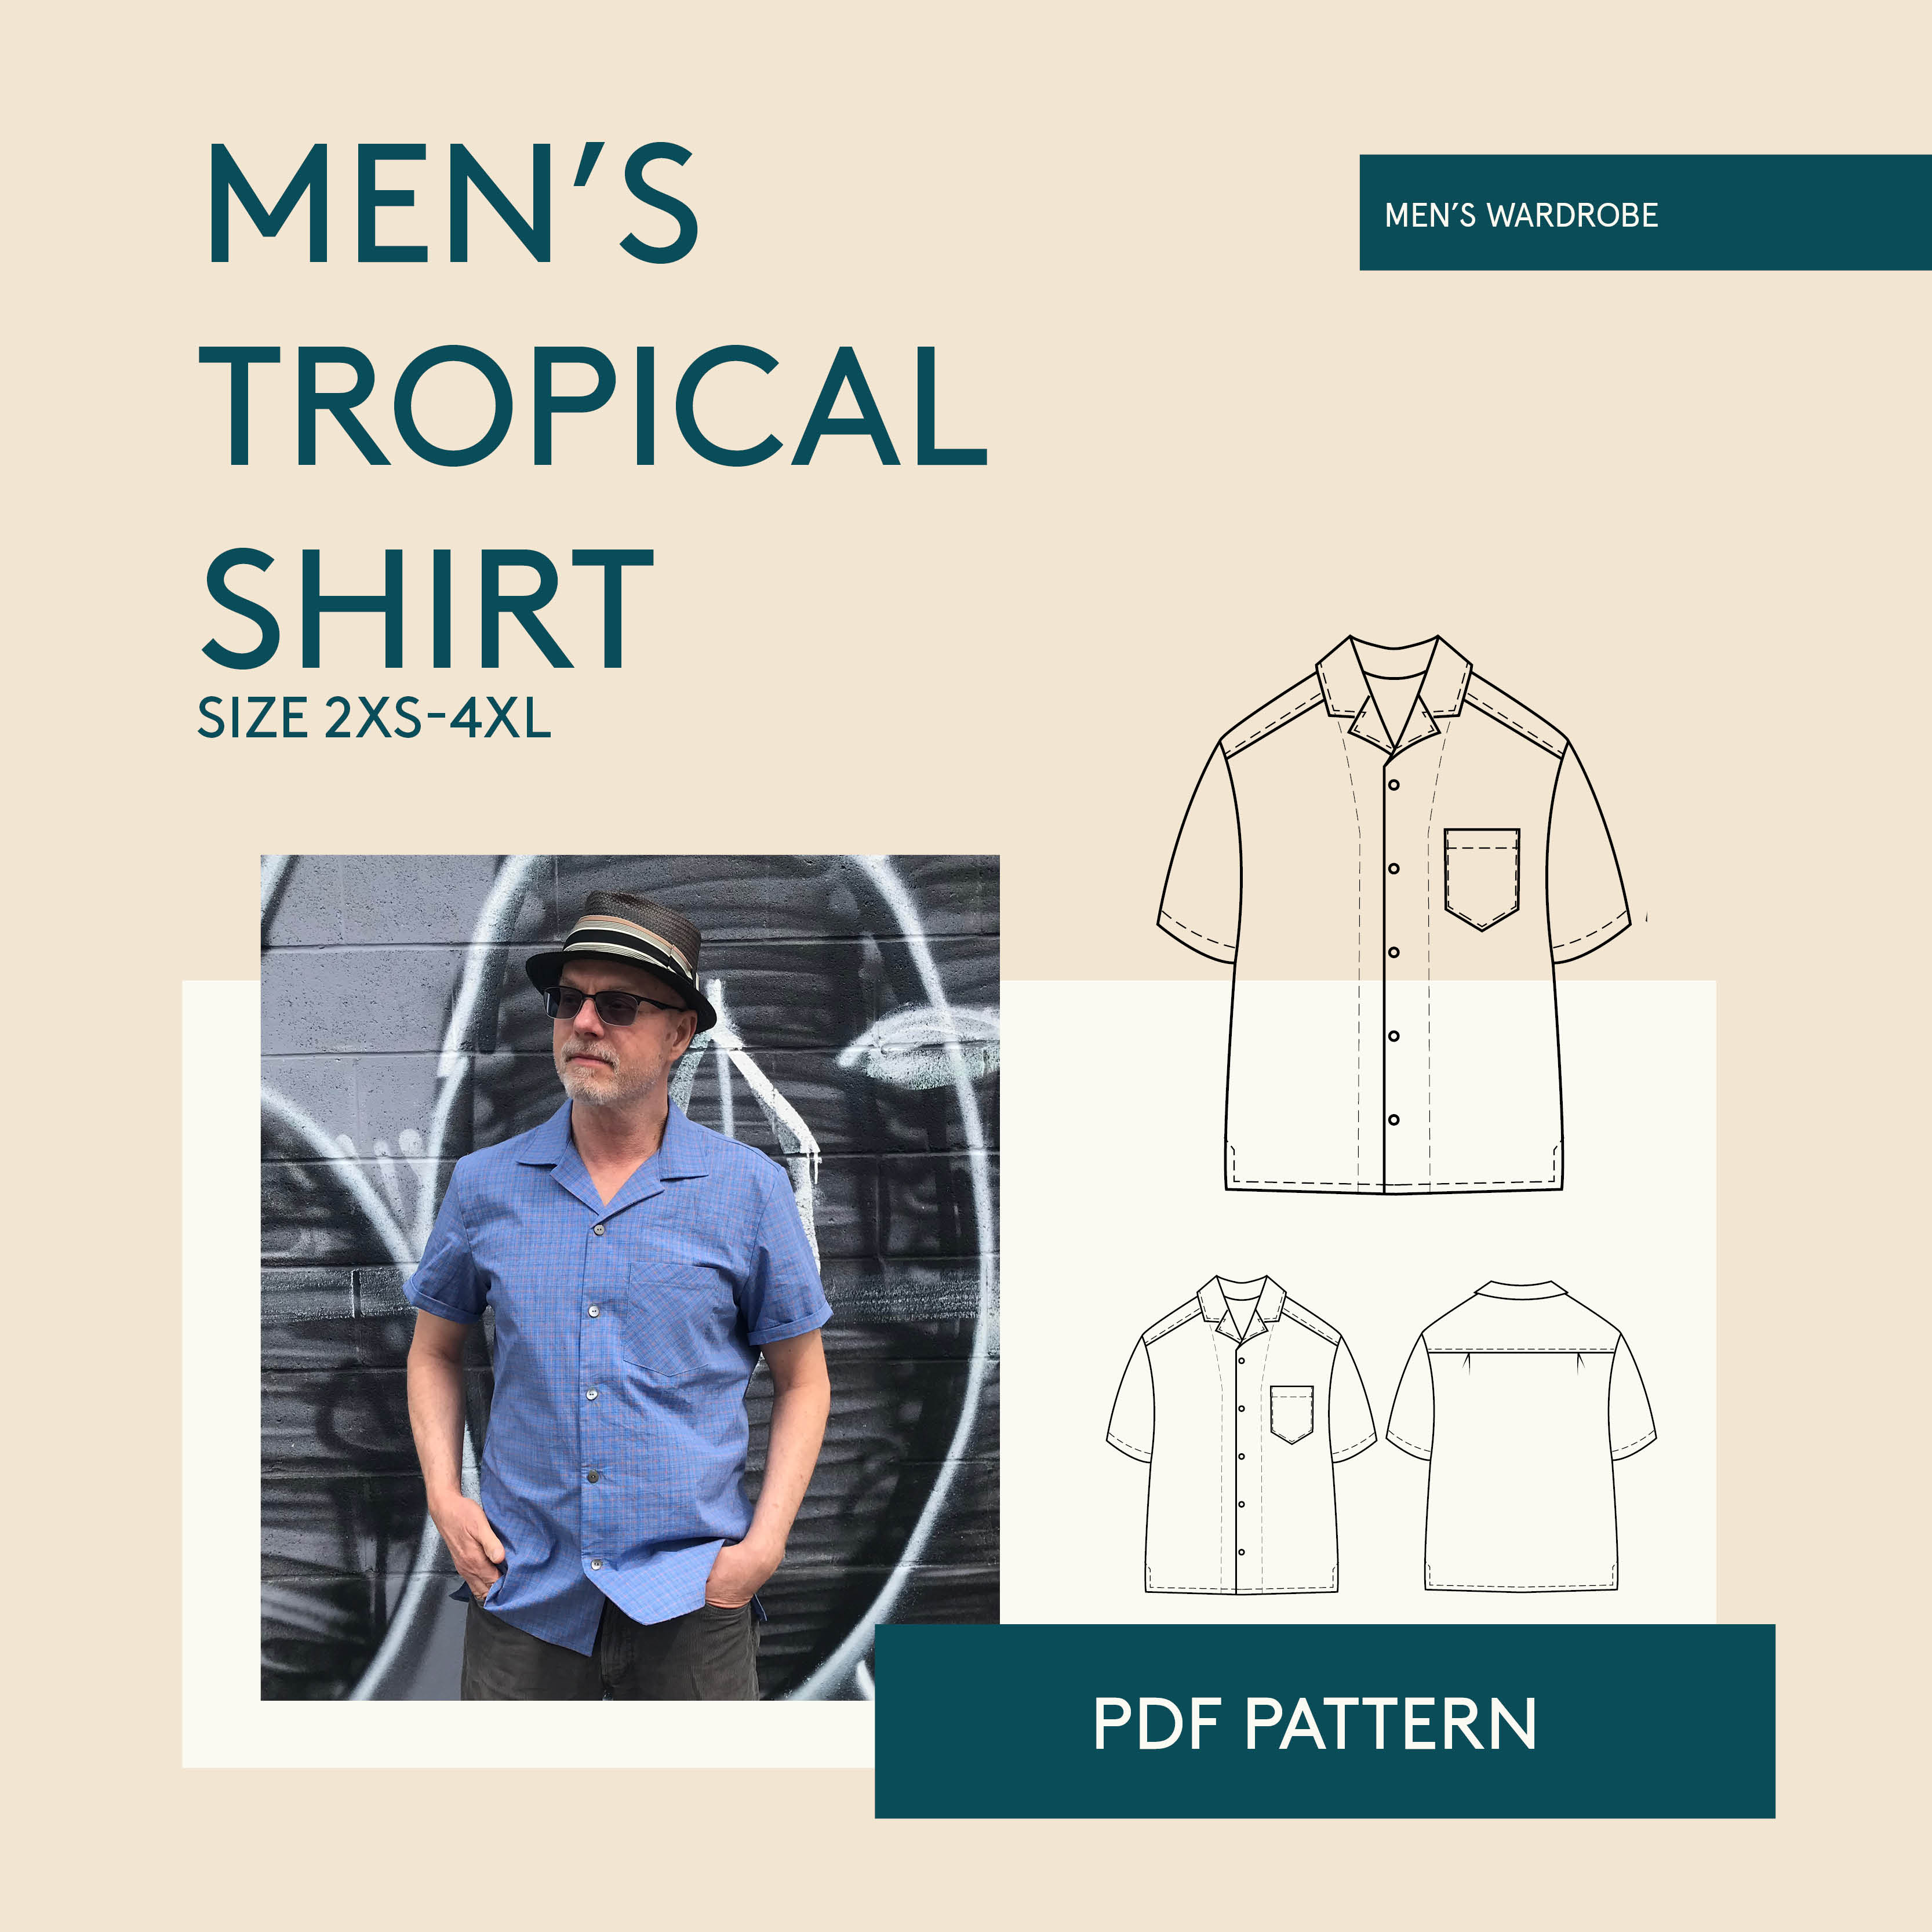 Wardrobe by Me Tropical shirt Downloadable Pattern